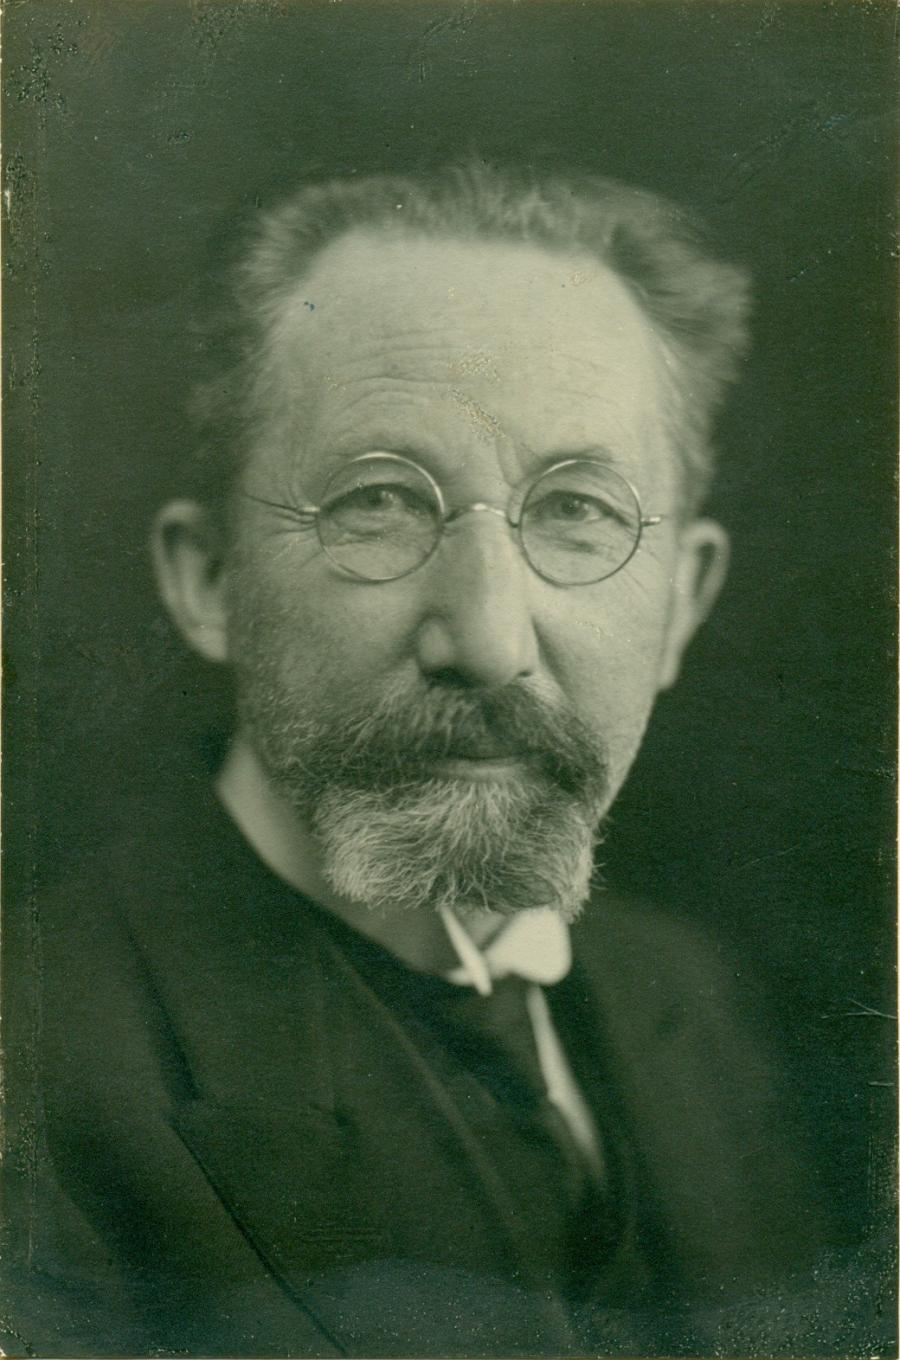 Portrætfoto af O.C. Andersen